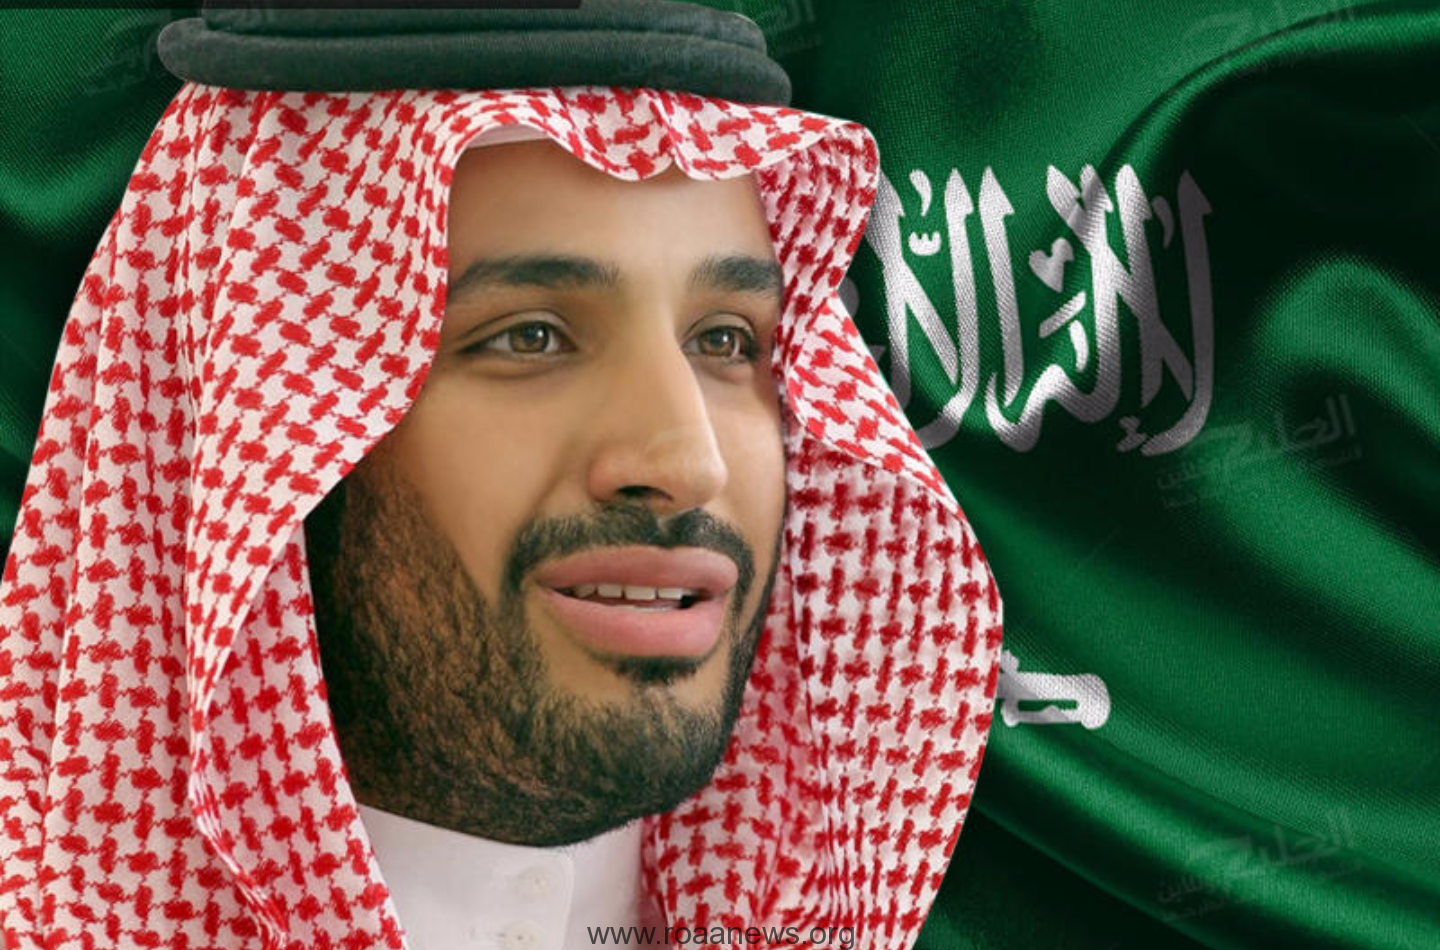 الأمير محمد بن سلمان يكافئ موظفاً خاطر بحياته لإنقاذ زملائه